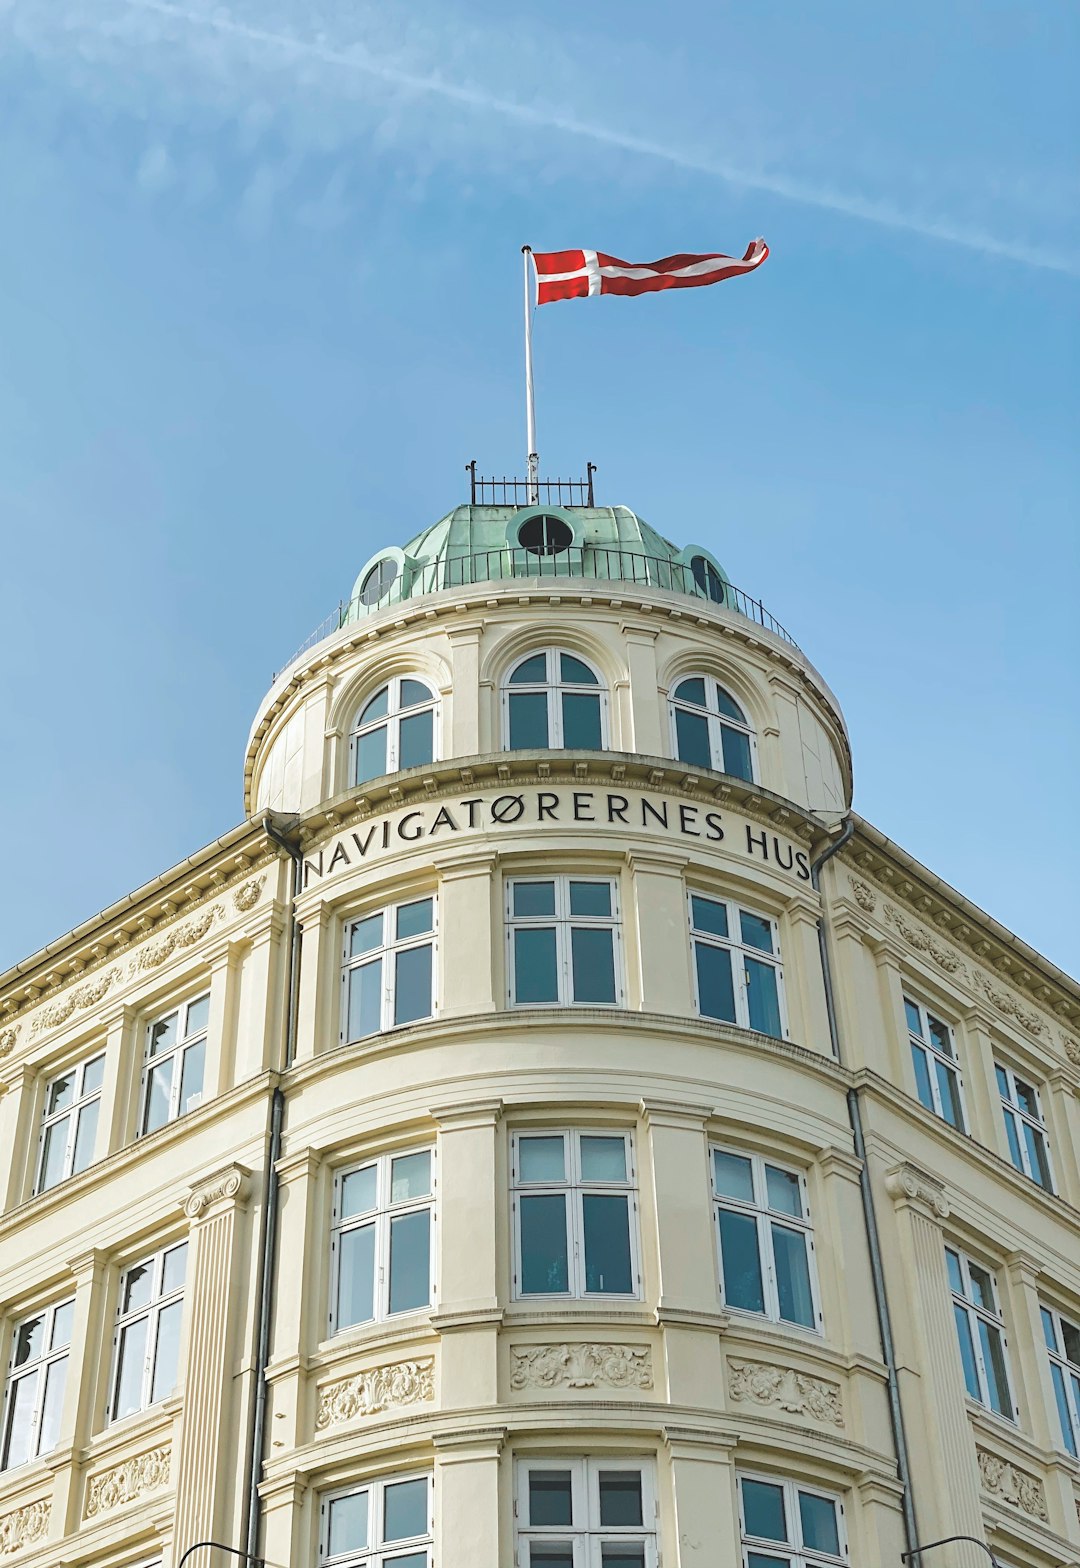 Landmark photo spot Nyhavn Rosenborg Castle